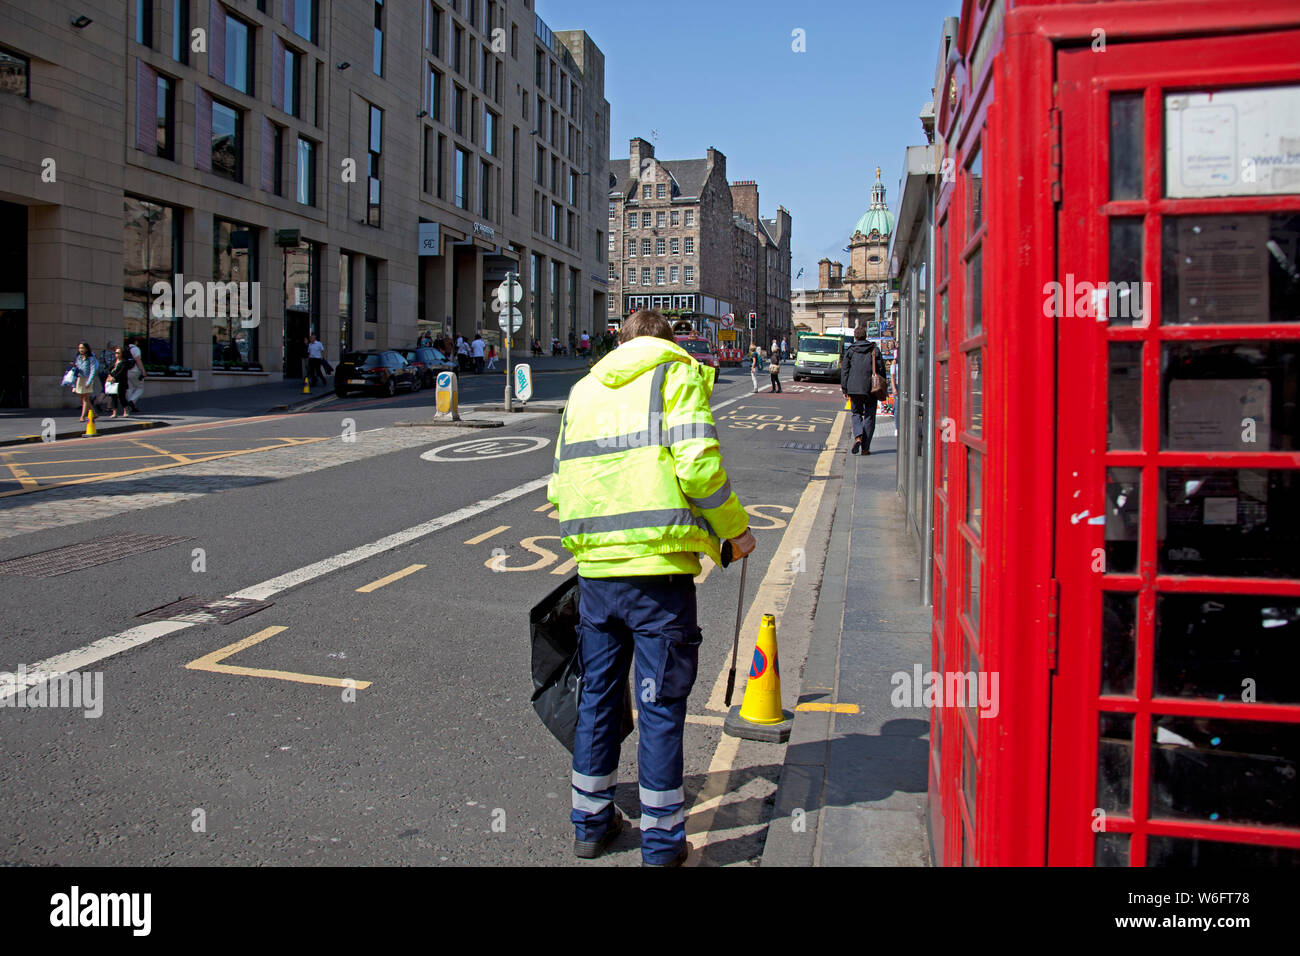 Edinburgh, Schottland, Großbritannien. August 2019. 40 zusätzliche Straßenreinigungskräfte werden sich den derzeitigen 37 Mitarbeitern anschließen, um die Straßen und Bürgersteige der Hauptstadt während der außergewöhnlich geschäftigen Festivalperiode zu säuberen. Bereitstellung eines 24/7-Service. Stockfoto